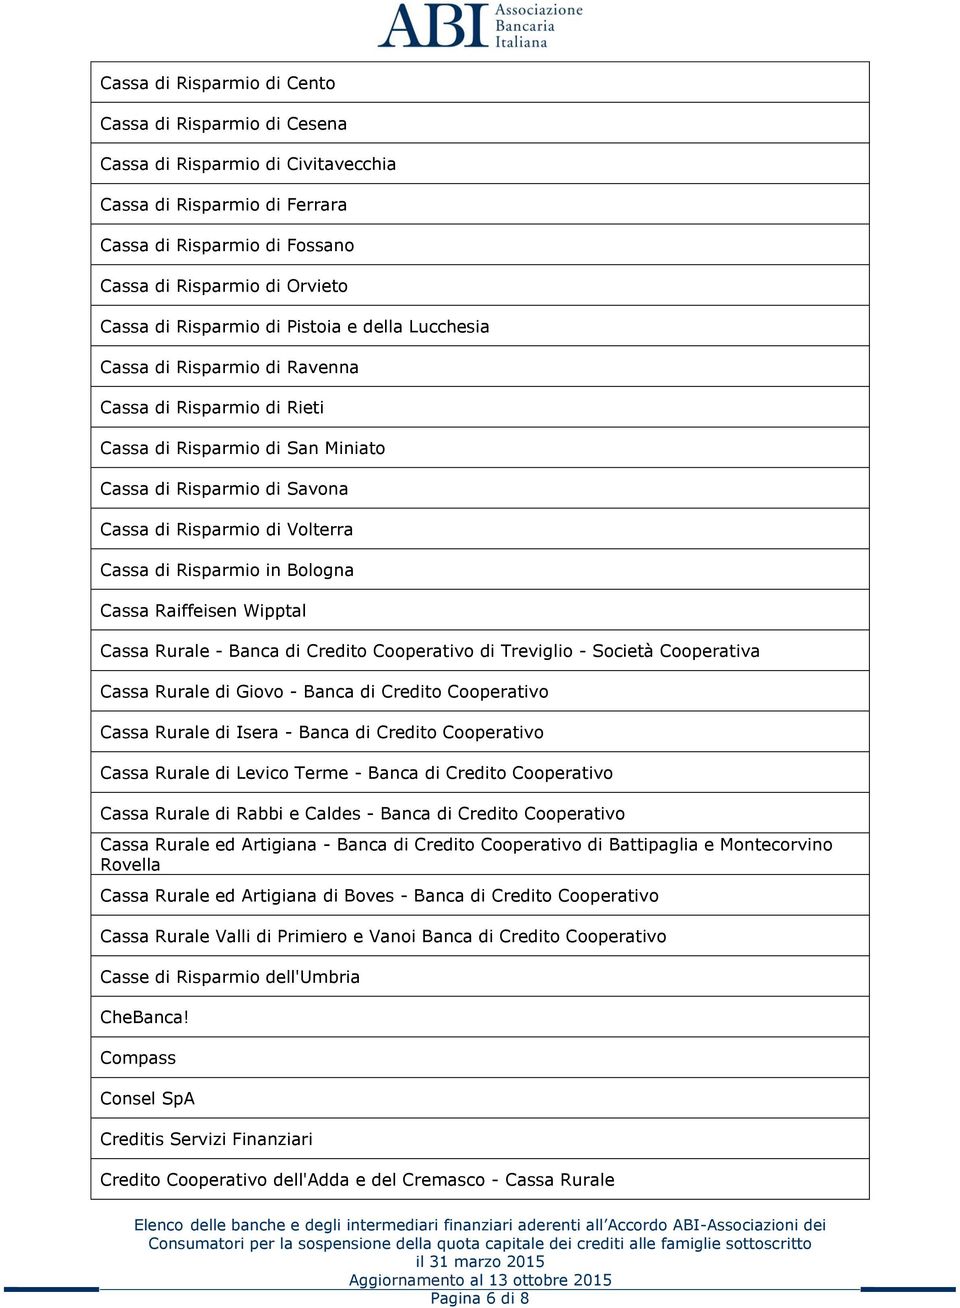 Risparmio in Bologna Cassa Raiffeisen Wipptal Cassa Rurale - Banca di Credito Cooperativo di Treviglio - Società Cooperativa Cassa Rurale di Giovo - Banca di Credito Cooperativo Cassa Rurale di Isera